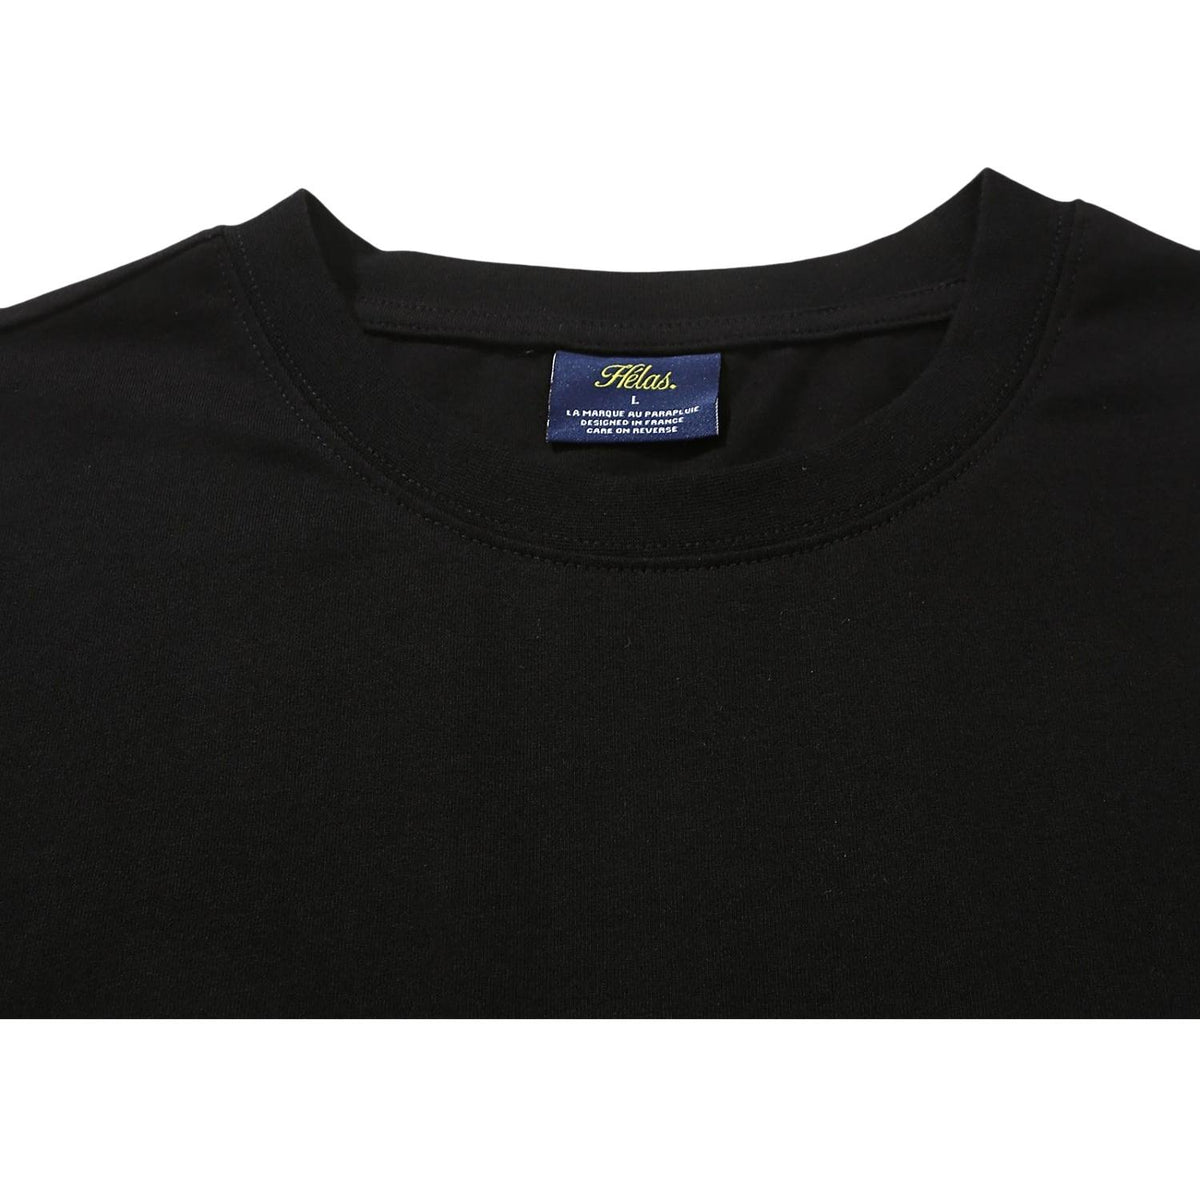 Helas Clint T-Shirt - Black - Mens Skate Brand T-Shirt by Helas